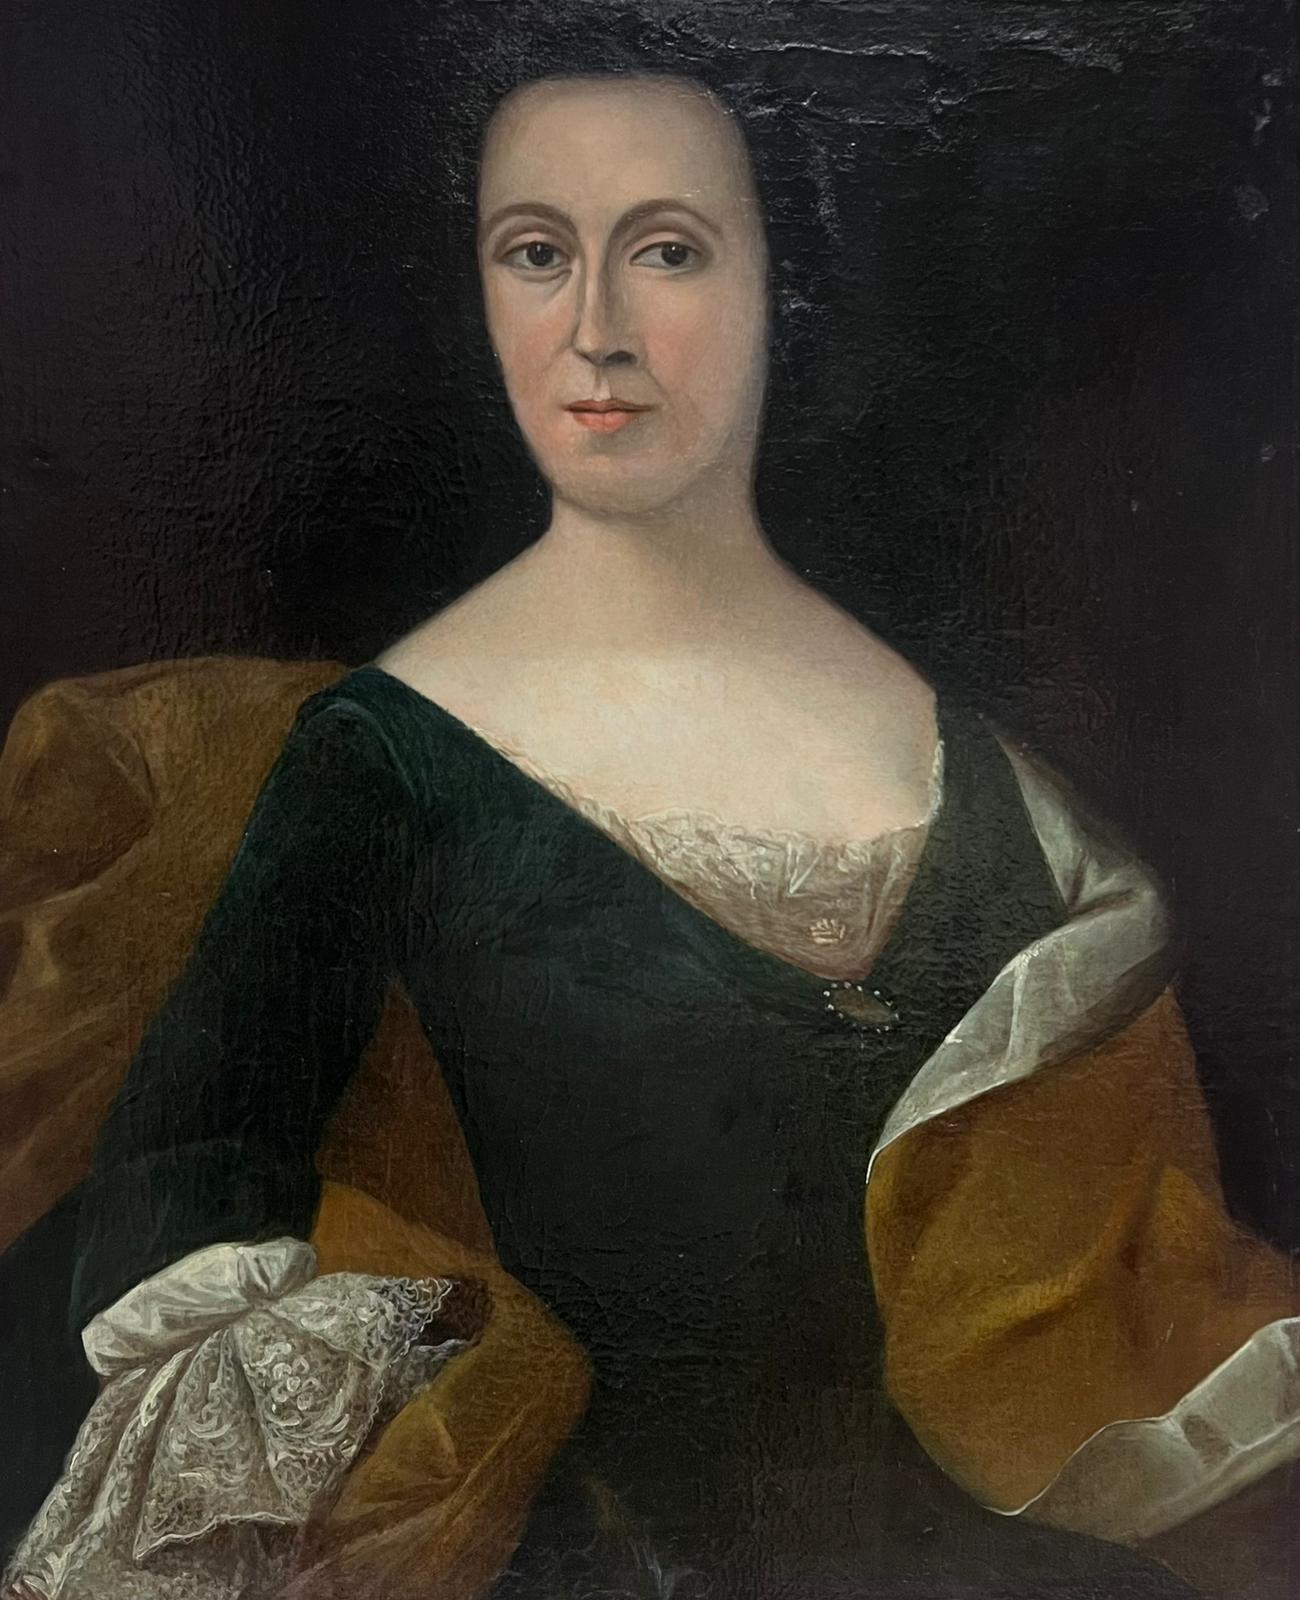 Grand portrait à l'huile européen du 18ème siècle représentant une noble dame portant des colliers de dentelle - Painting de 18th Century European